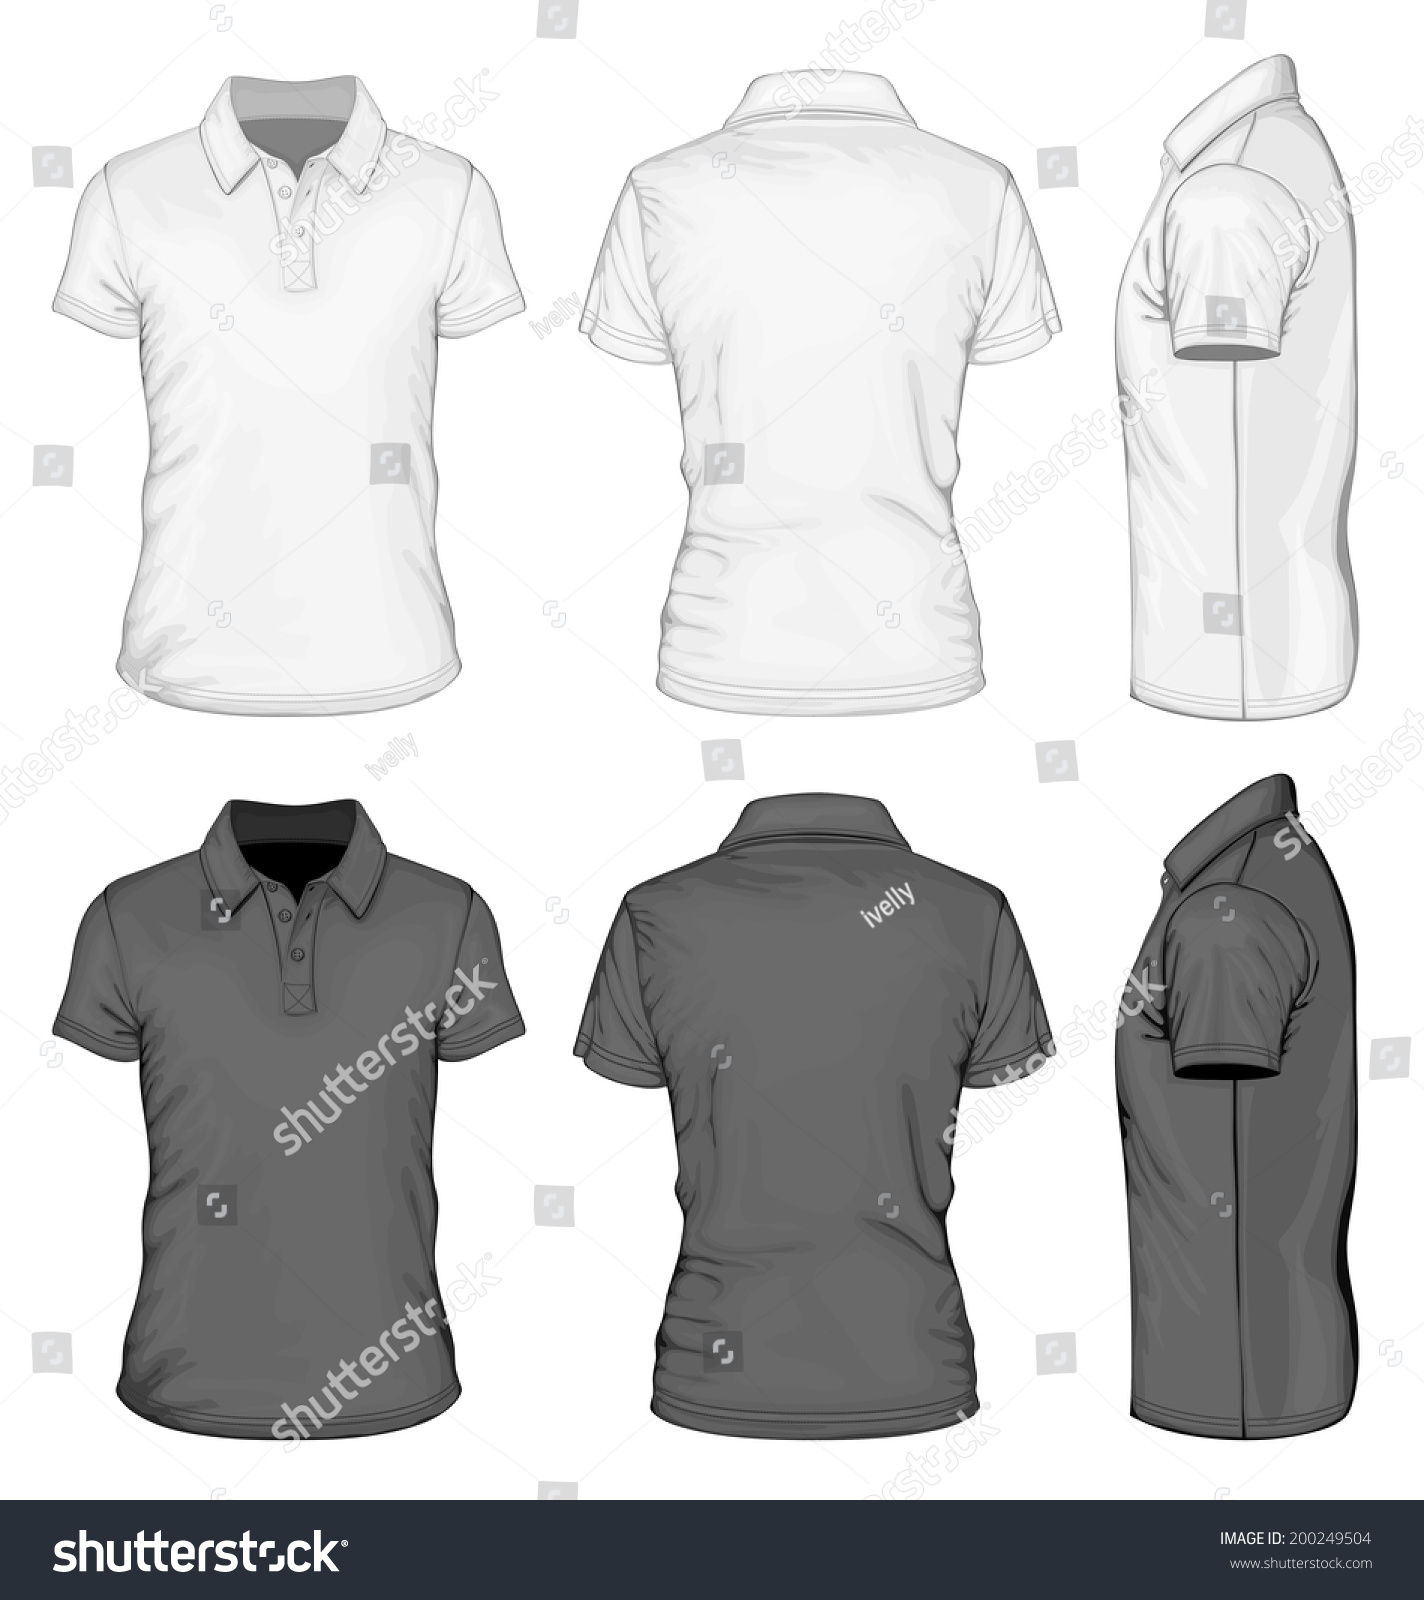 Download Mens White Black Short Sleeve Poloshirt Stock Vector ...